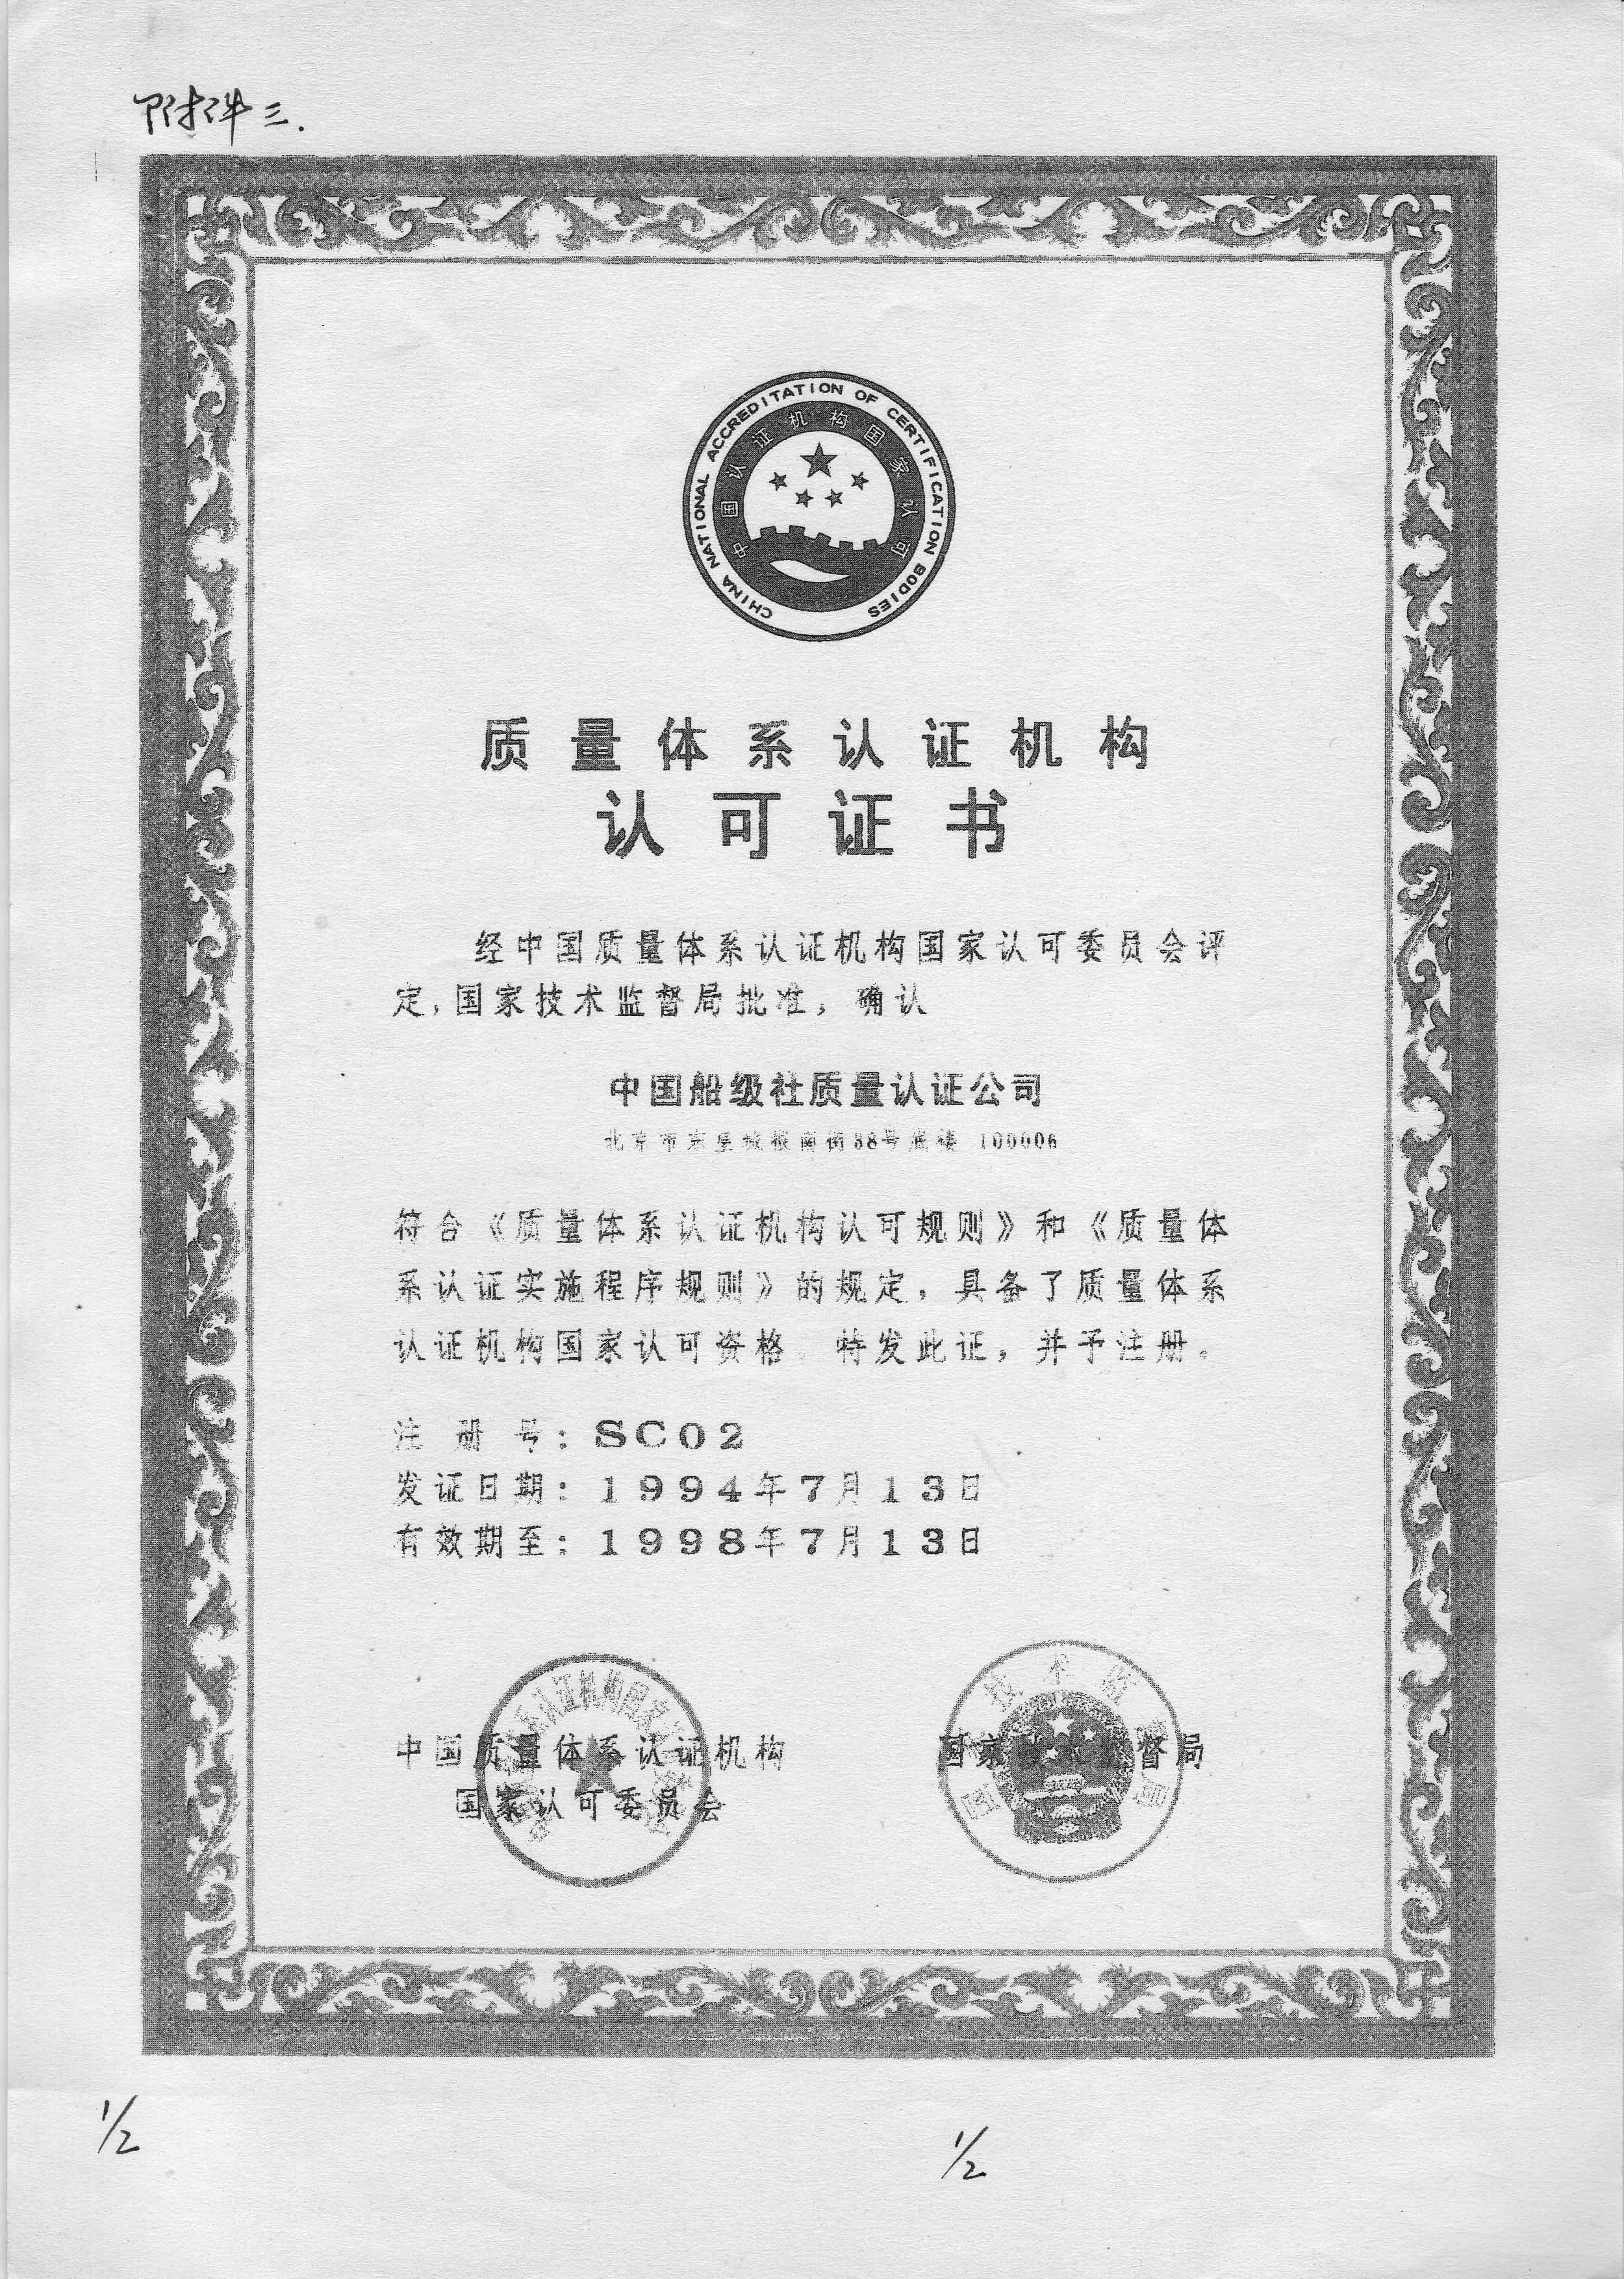 1994年7月13日，公司获得中国质量体系认证机构认可委员会和国家技术监督局联合颁发的《质量体系认证机构认可证书》，成为我国最早获得国家认可的质量认证机构之一。.jpg